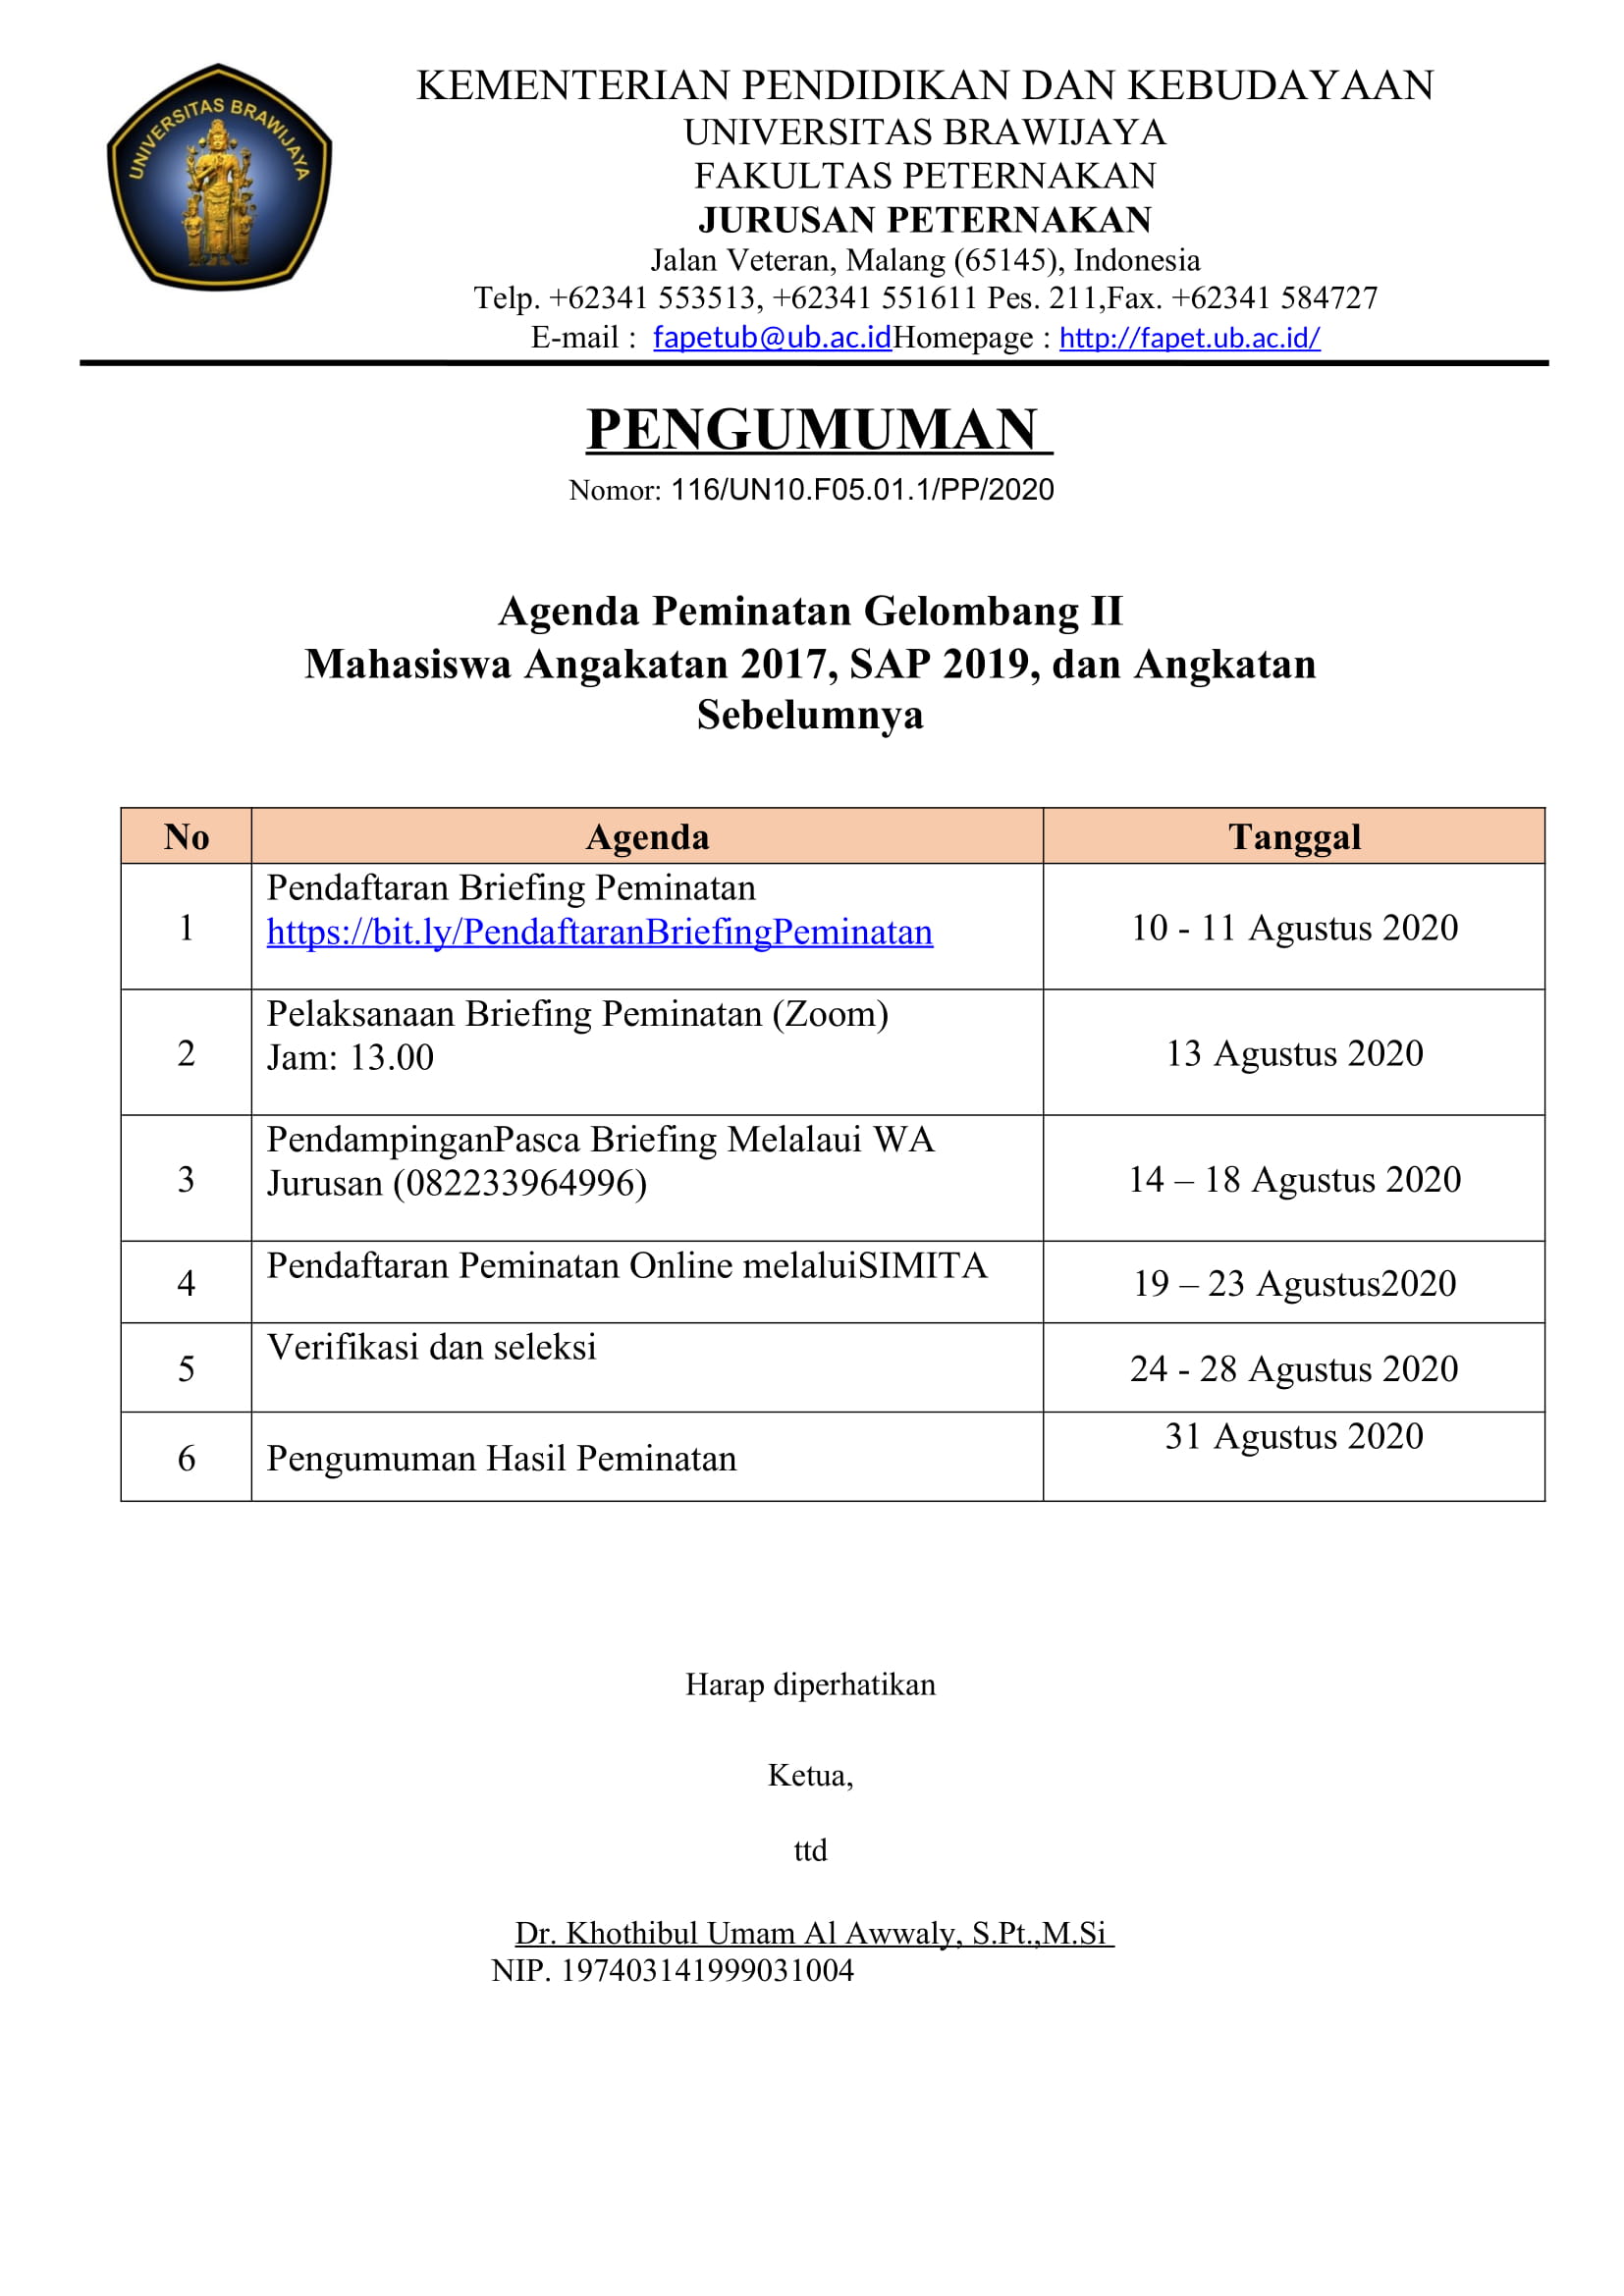 Agenda Peminatan Gelombang II Angkatan 2017